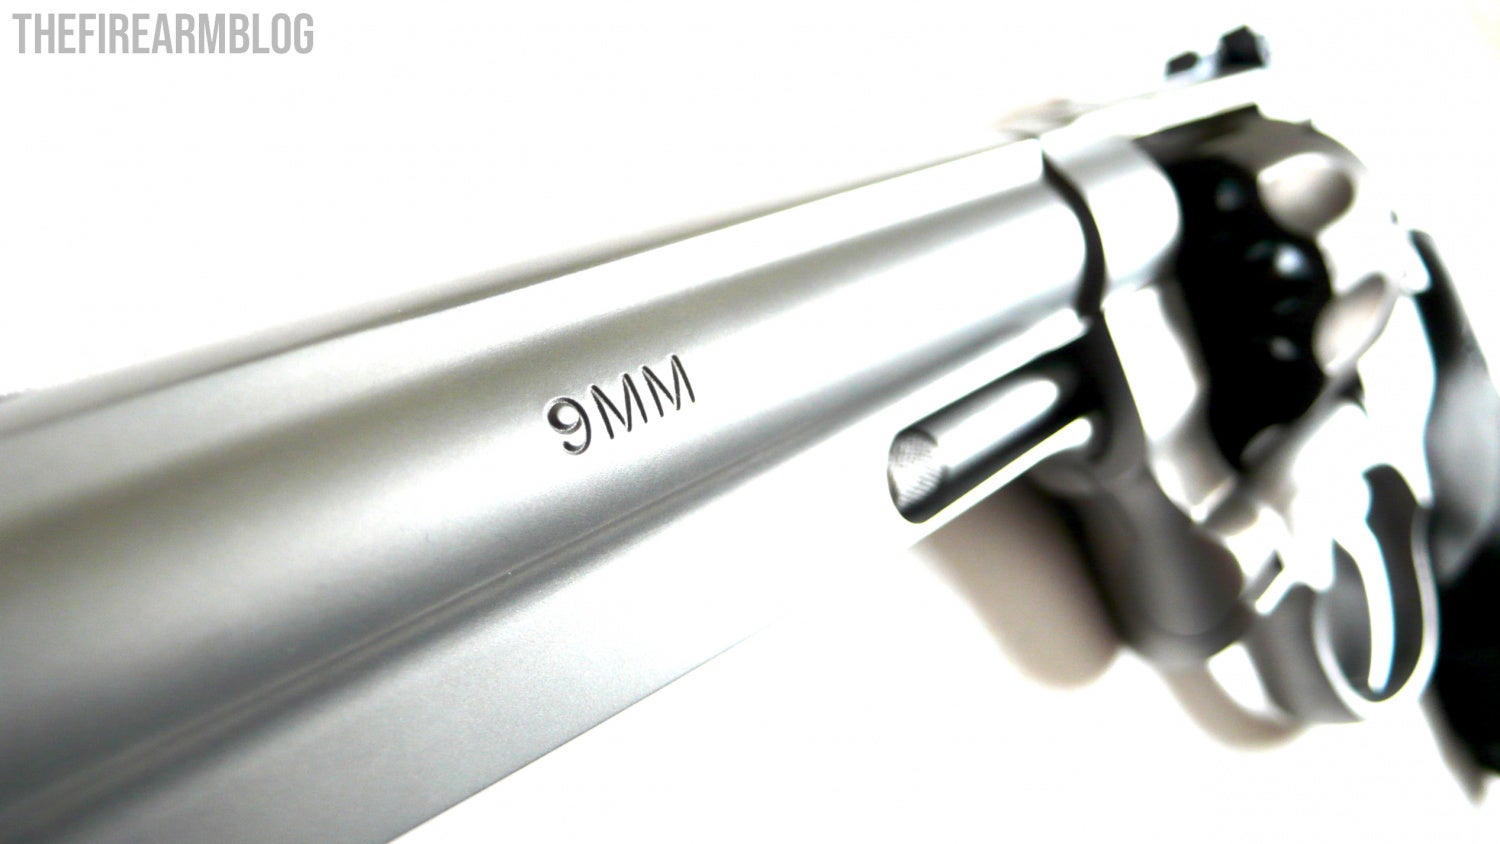 S&W 929 9mm revolver